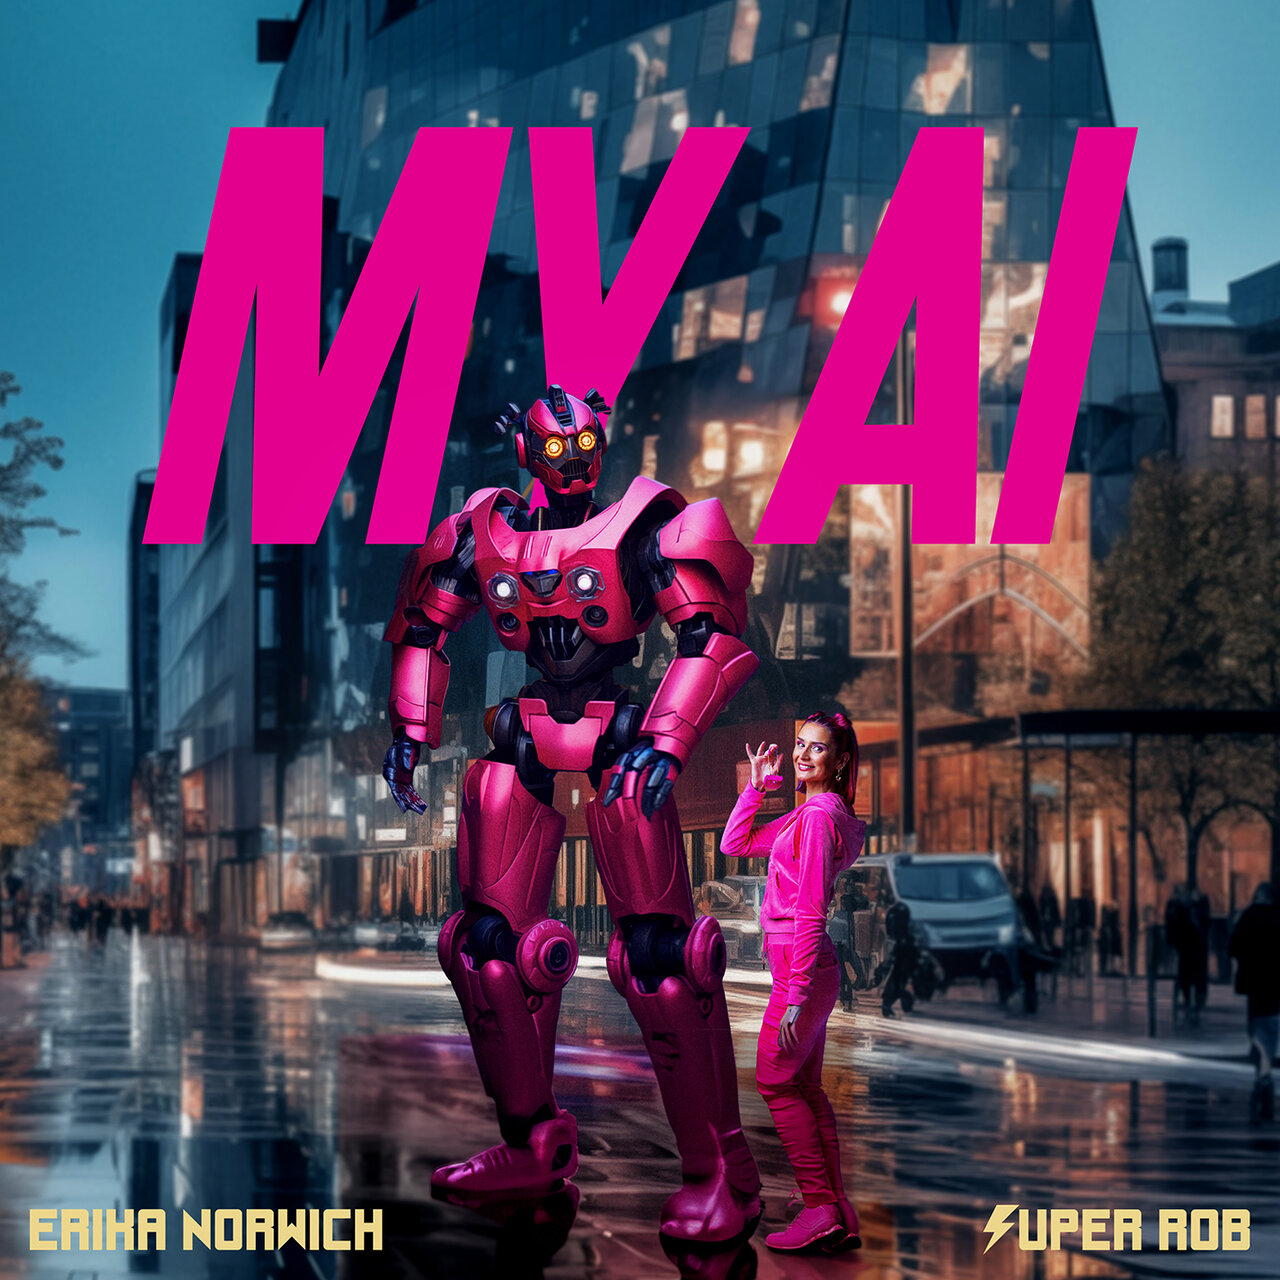 Super Rob & Erika Norwich — My AI cover artwork